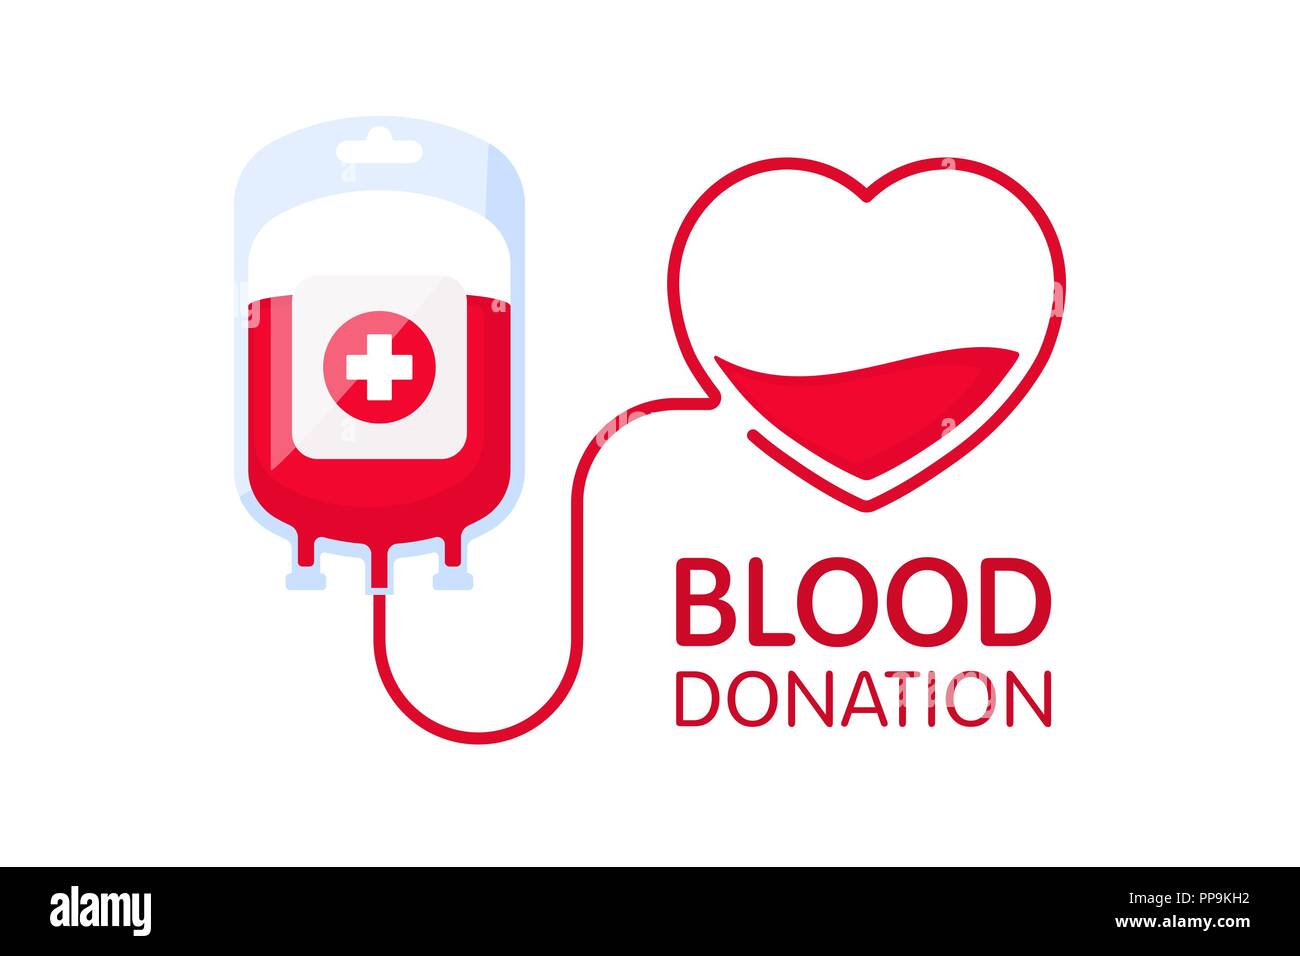 Blut Konzept mit Tasche und Herz Blut spenden. Blut spende Vector Illustration auf weißem Hintergrund. Weltblutspendetag - Juni 14. Stock Vektor